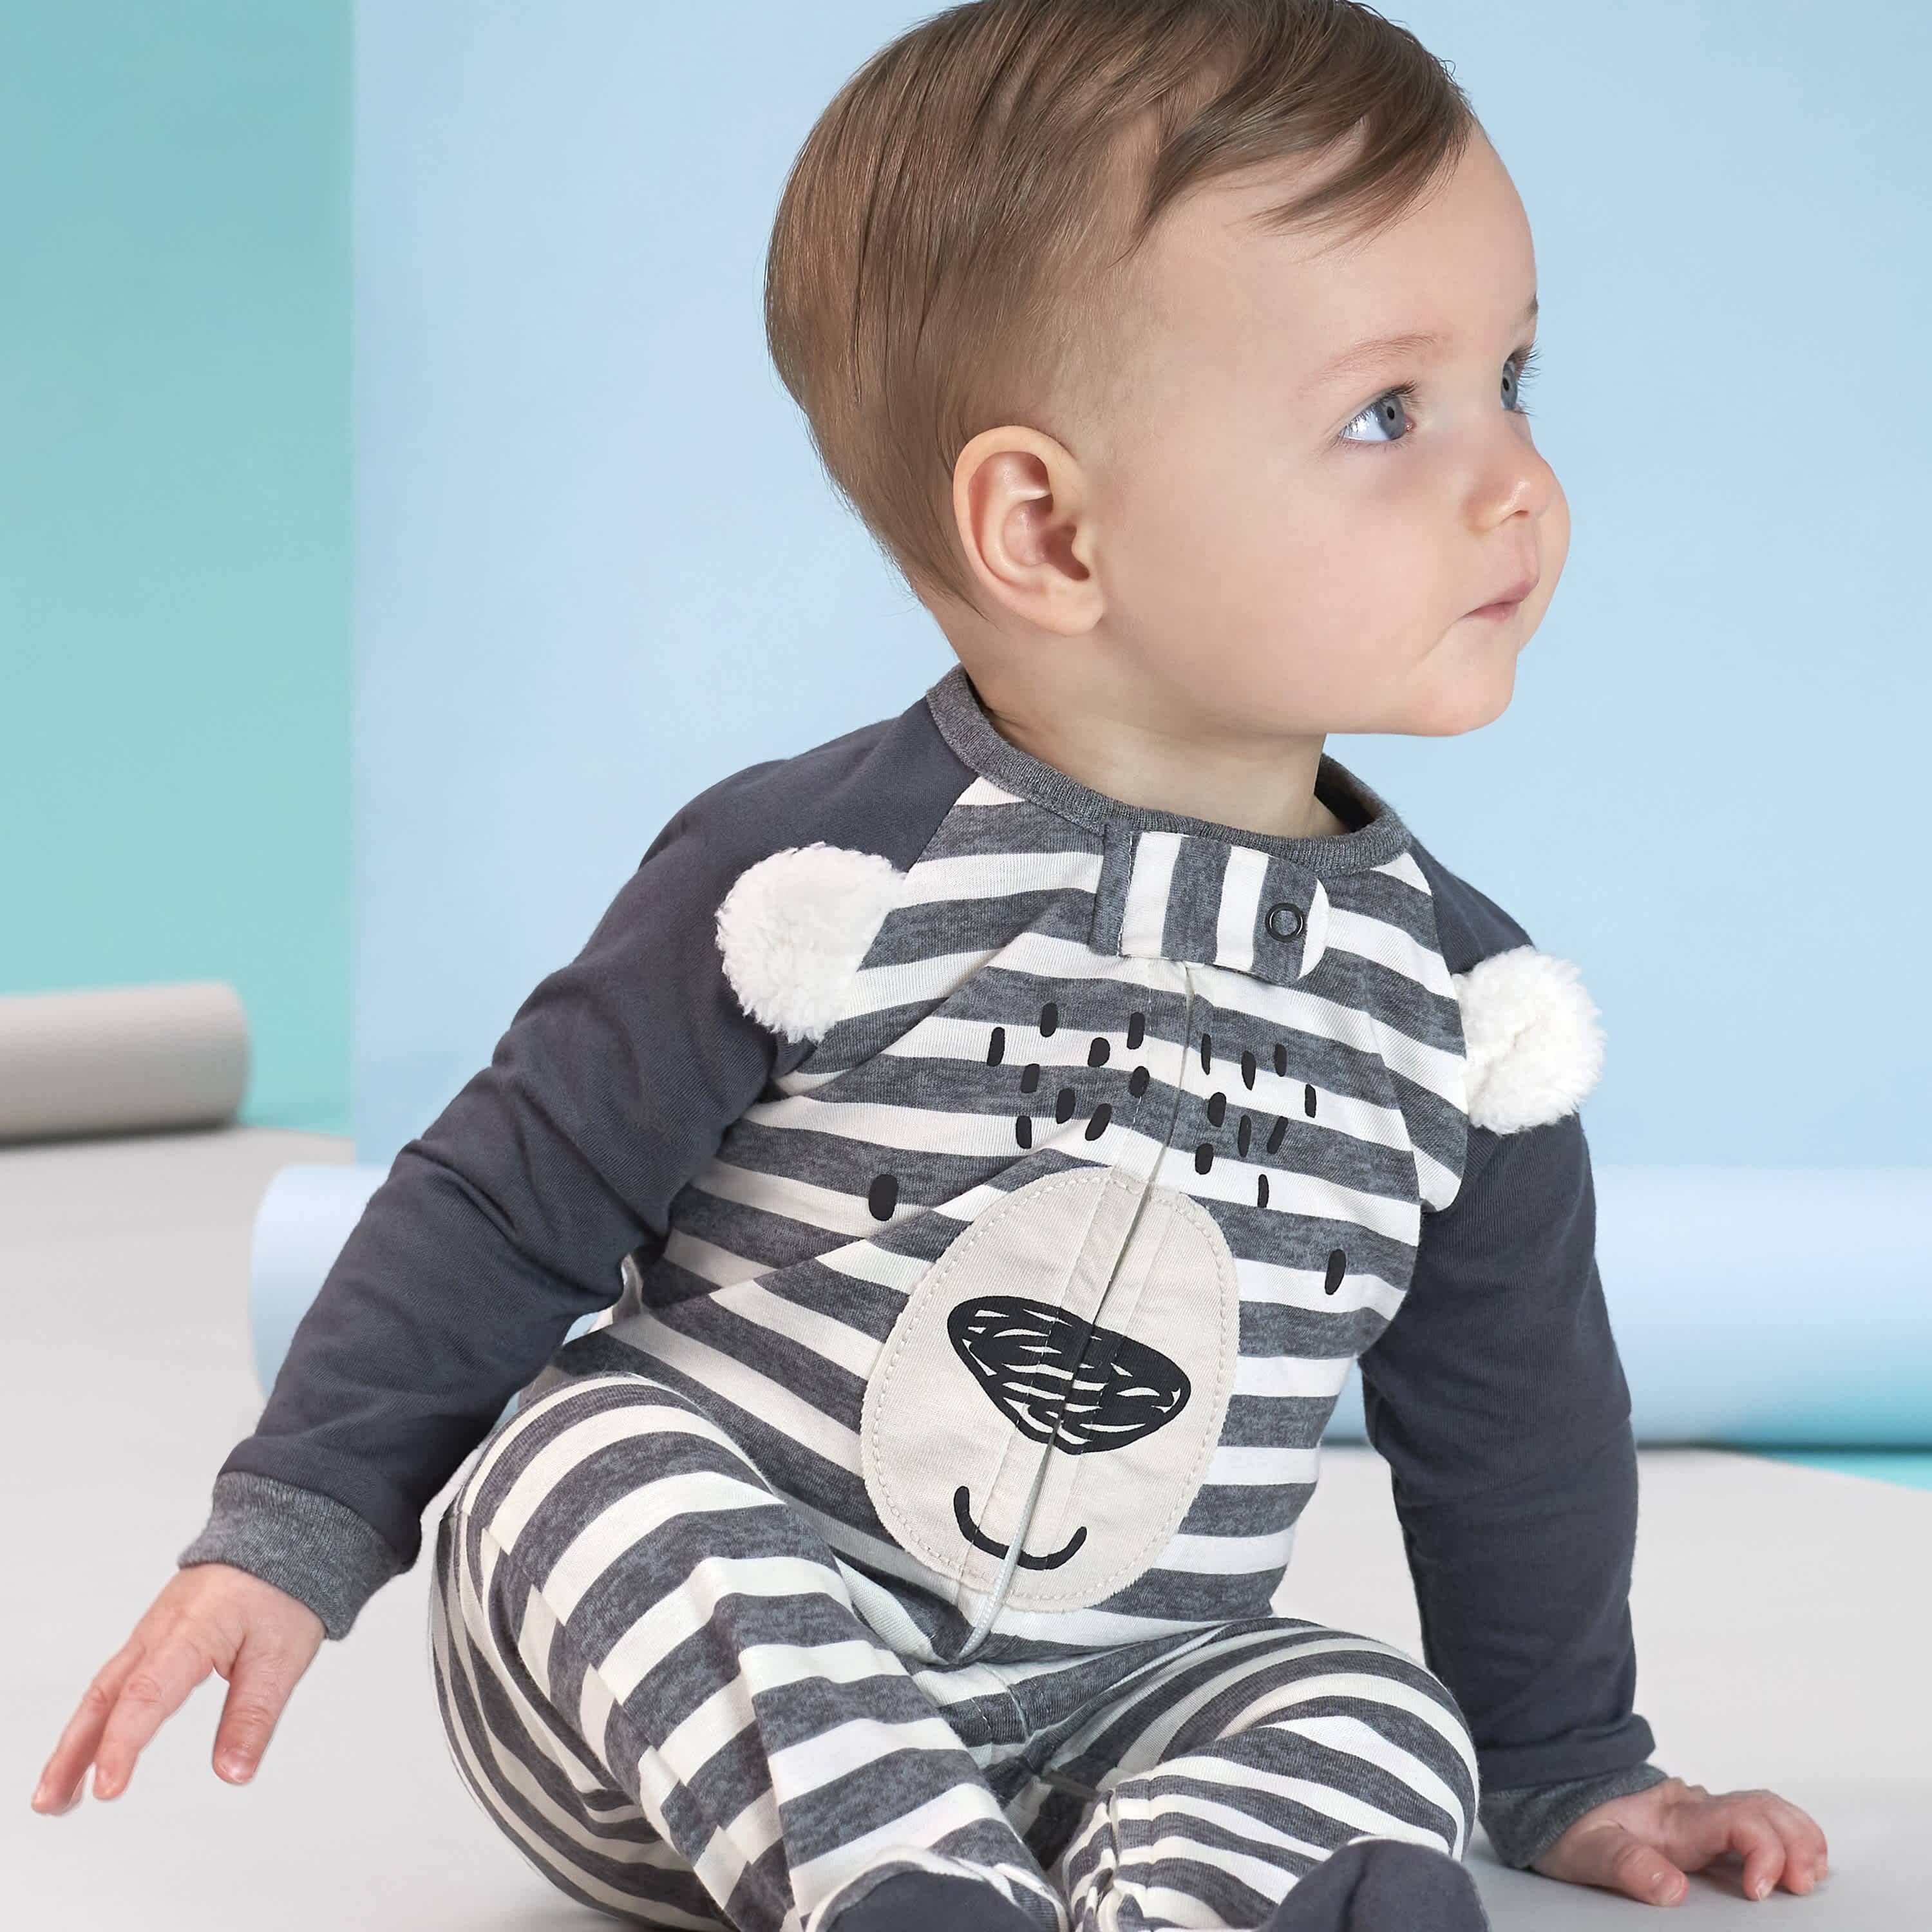 Baby Boy Clothing : Target